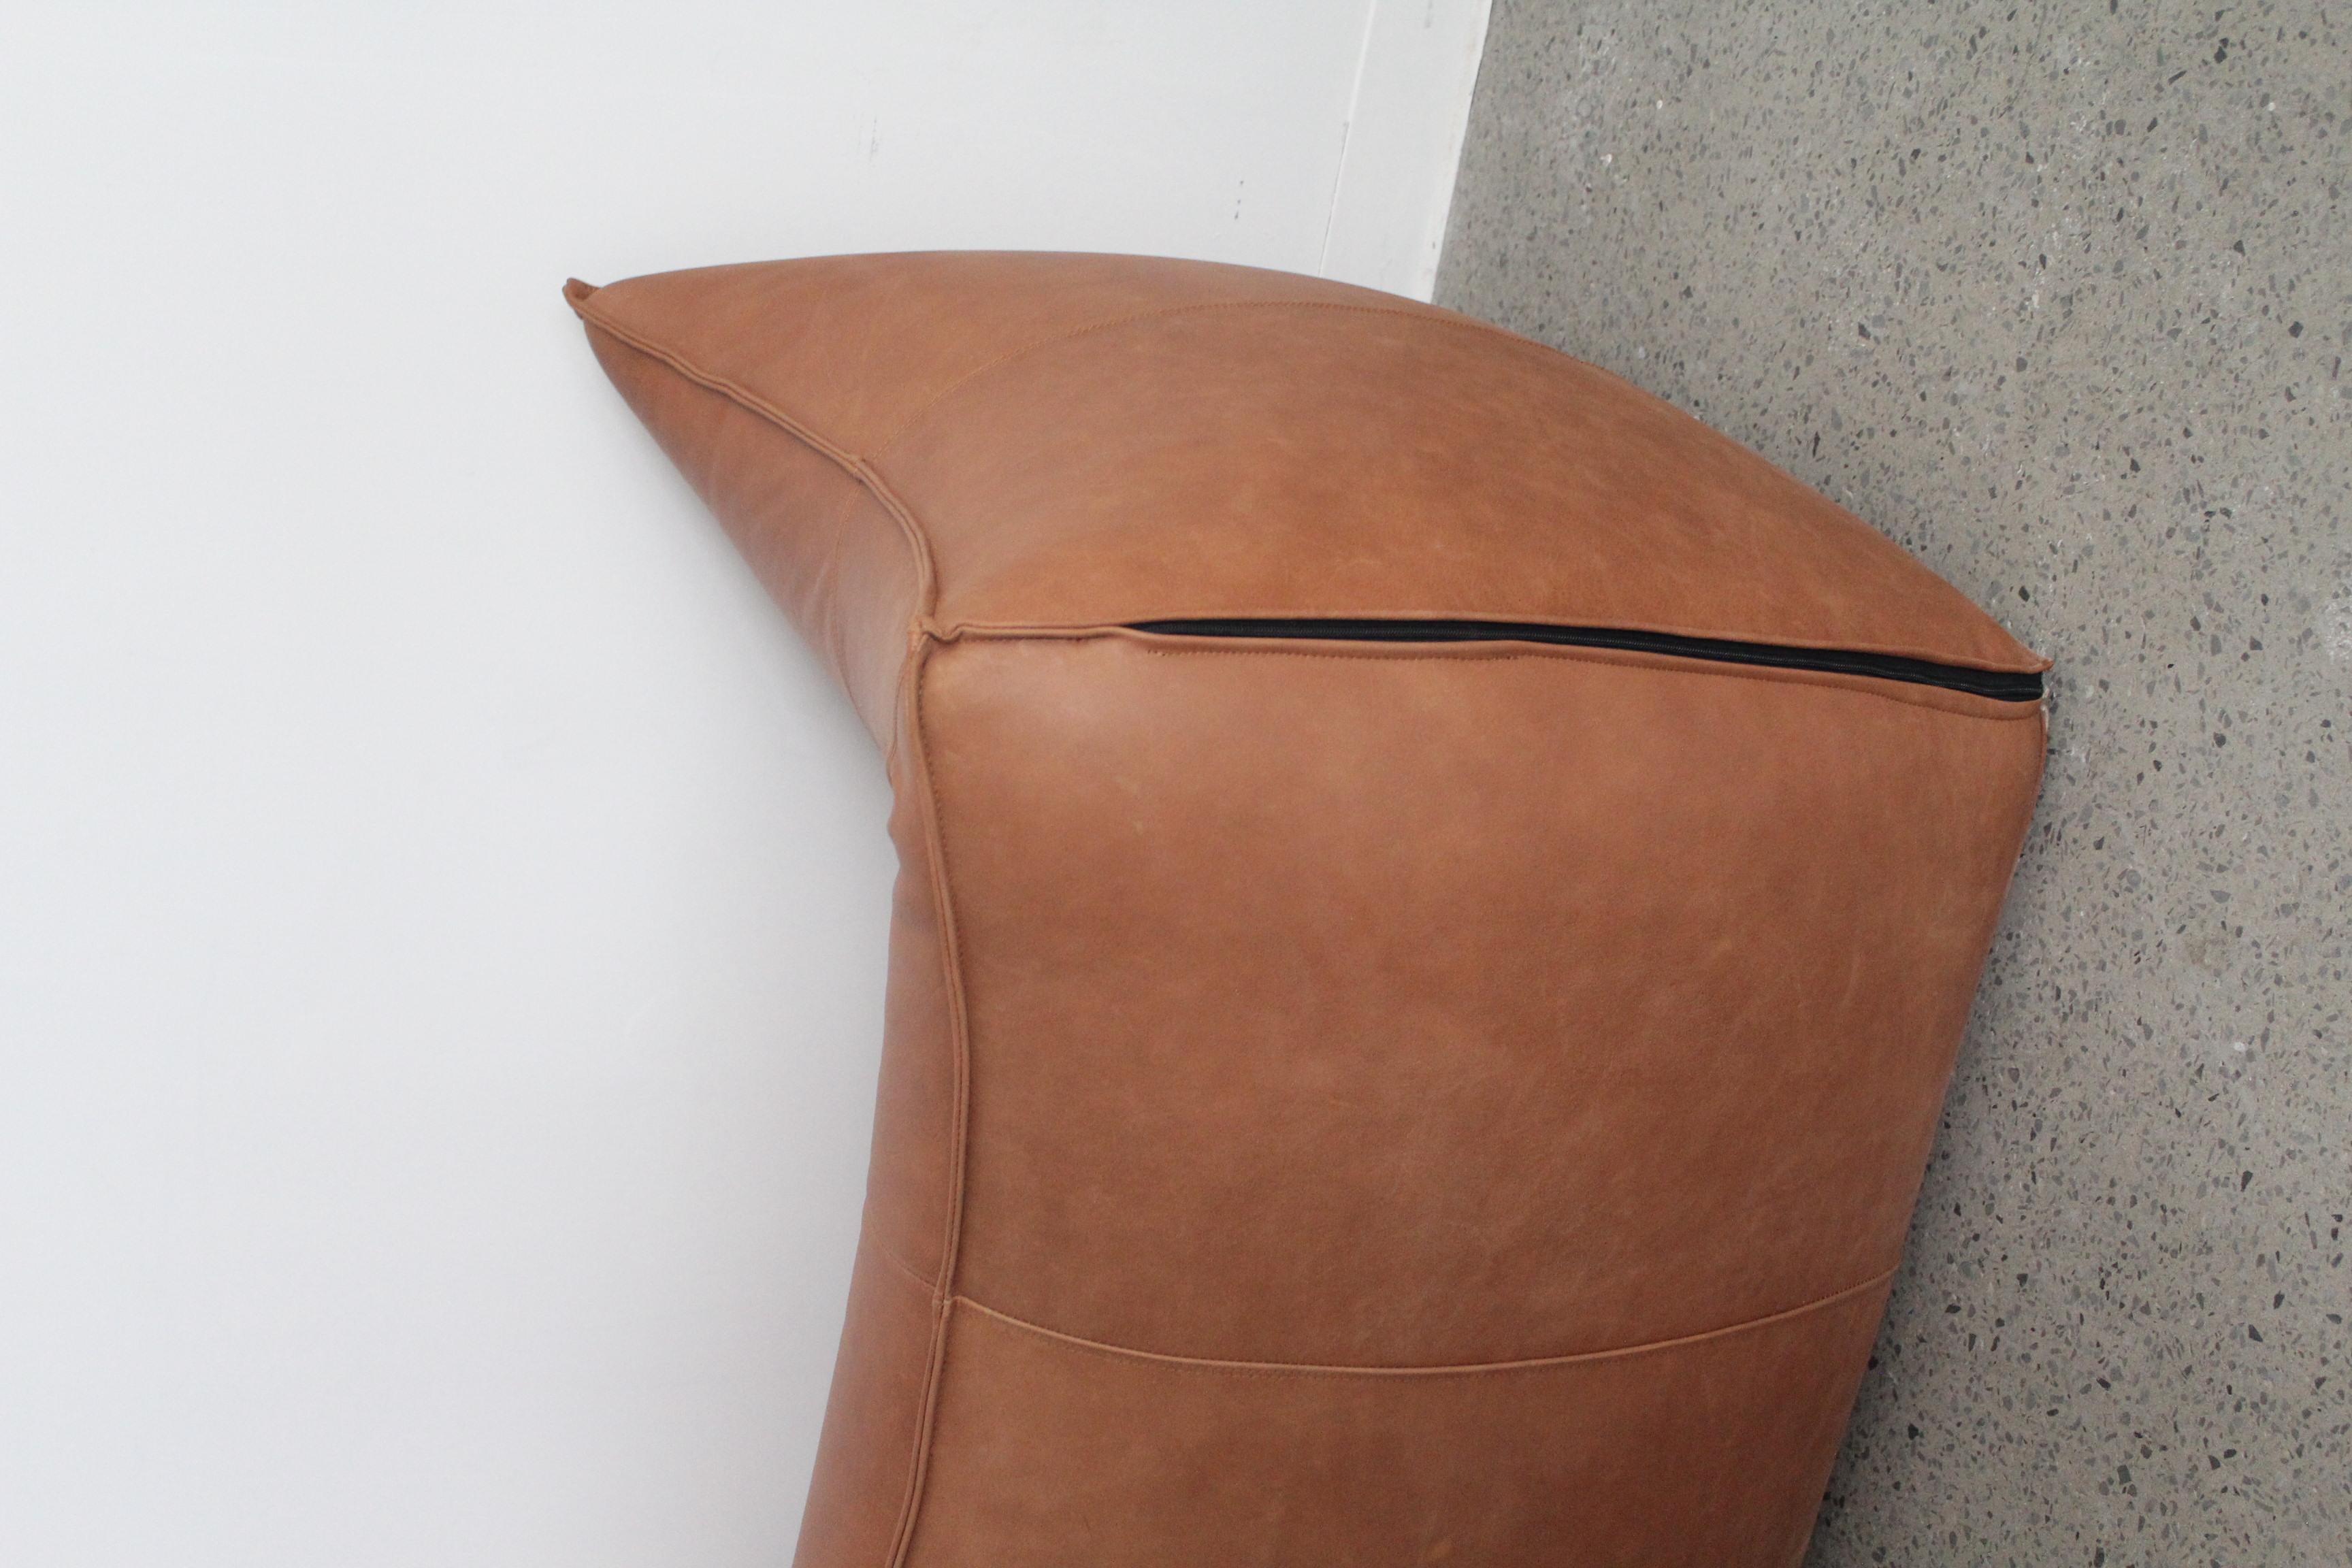 Loveseat Le Bambole von Mario Bellini für B&B Italia, 1970er Jahre. Dieses ikonische Sofa besteht aus dickem büffelbraunem Leder - Innenausstattung aus Polyurethanschaum mit Metallrahmen.

In gutem Vintage-Zustand, das Sofa wurde neu